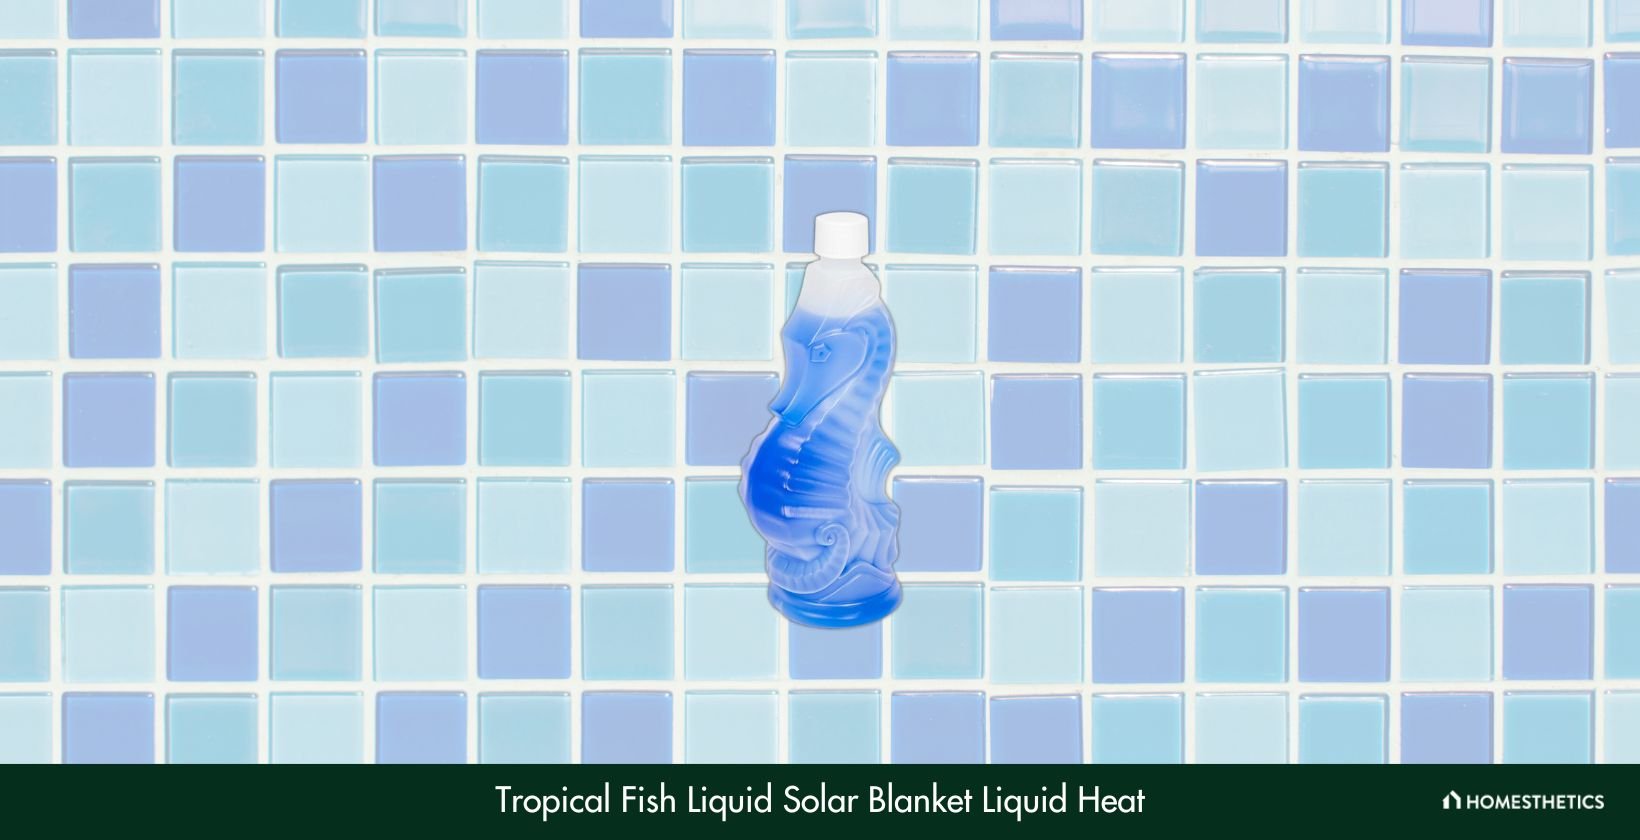 Tropical Fish Liquid Solar Blanket Liquid Heat